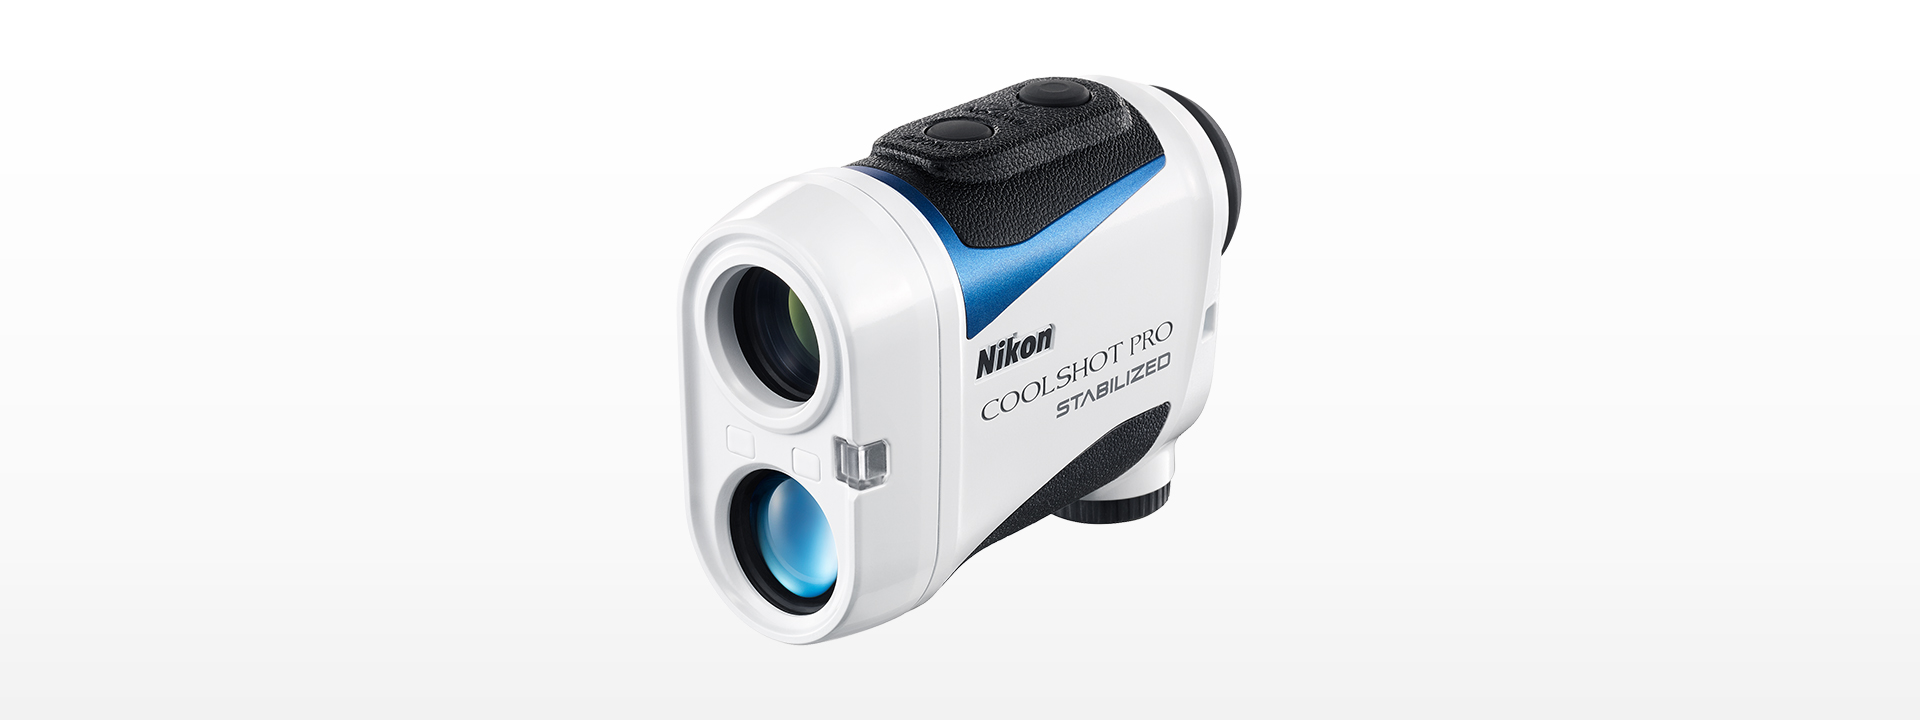 Nikon ゴルフ用レーザー距離計COOLSHOT PRO STABILIZEDアイレリーフ180mm